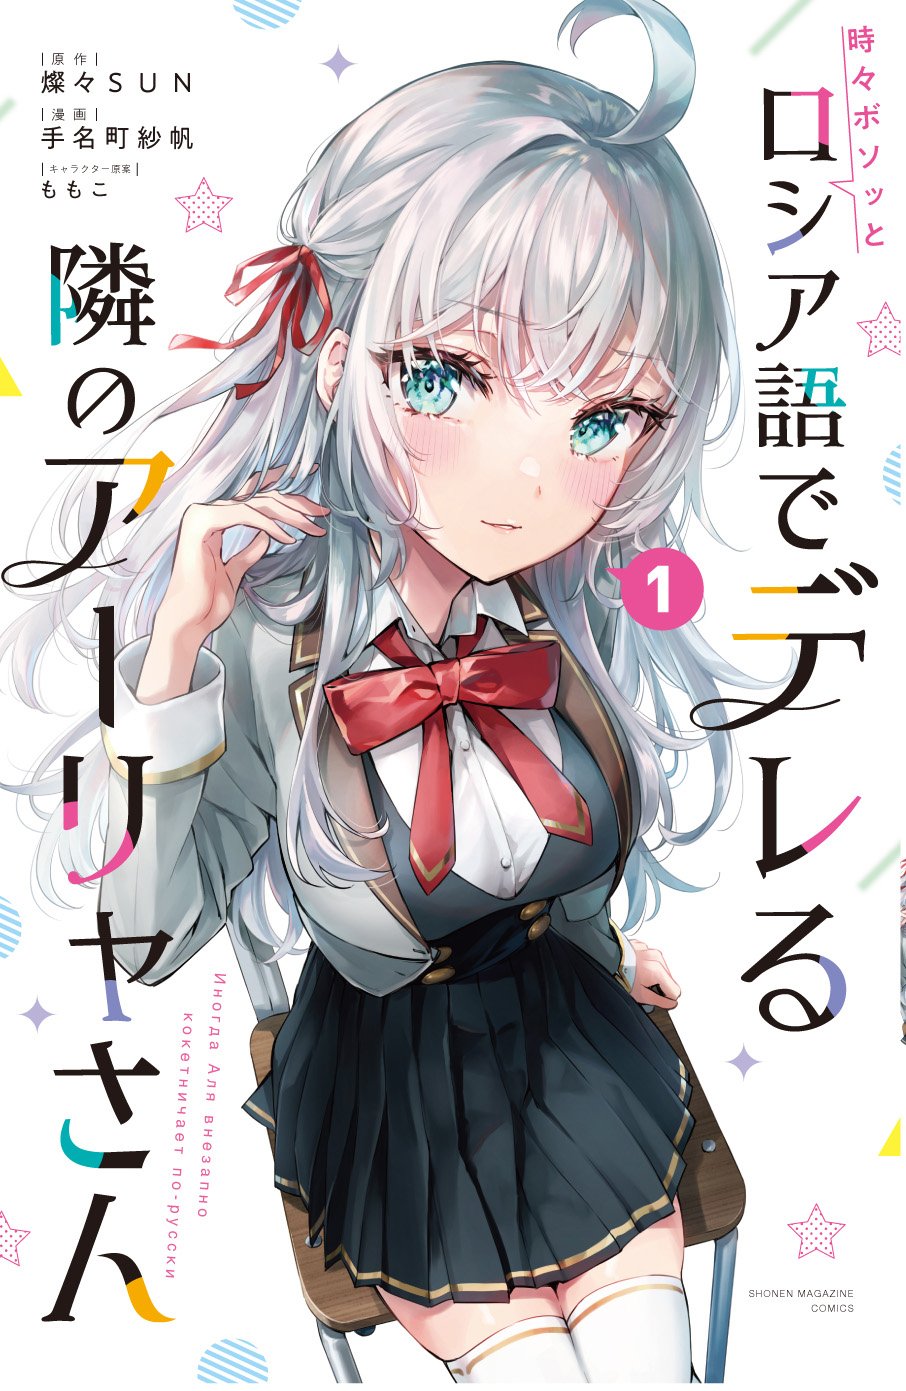 Manga Roshidere Arya-san vol 1